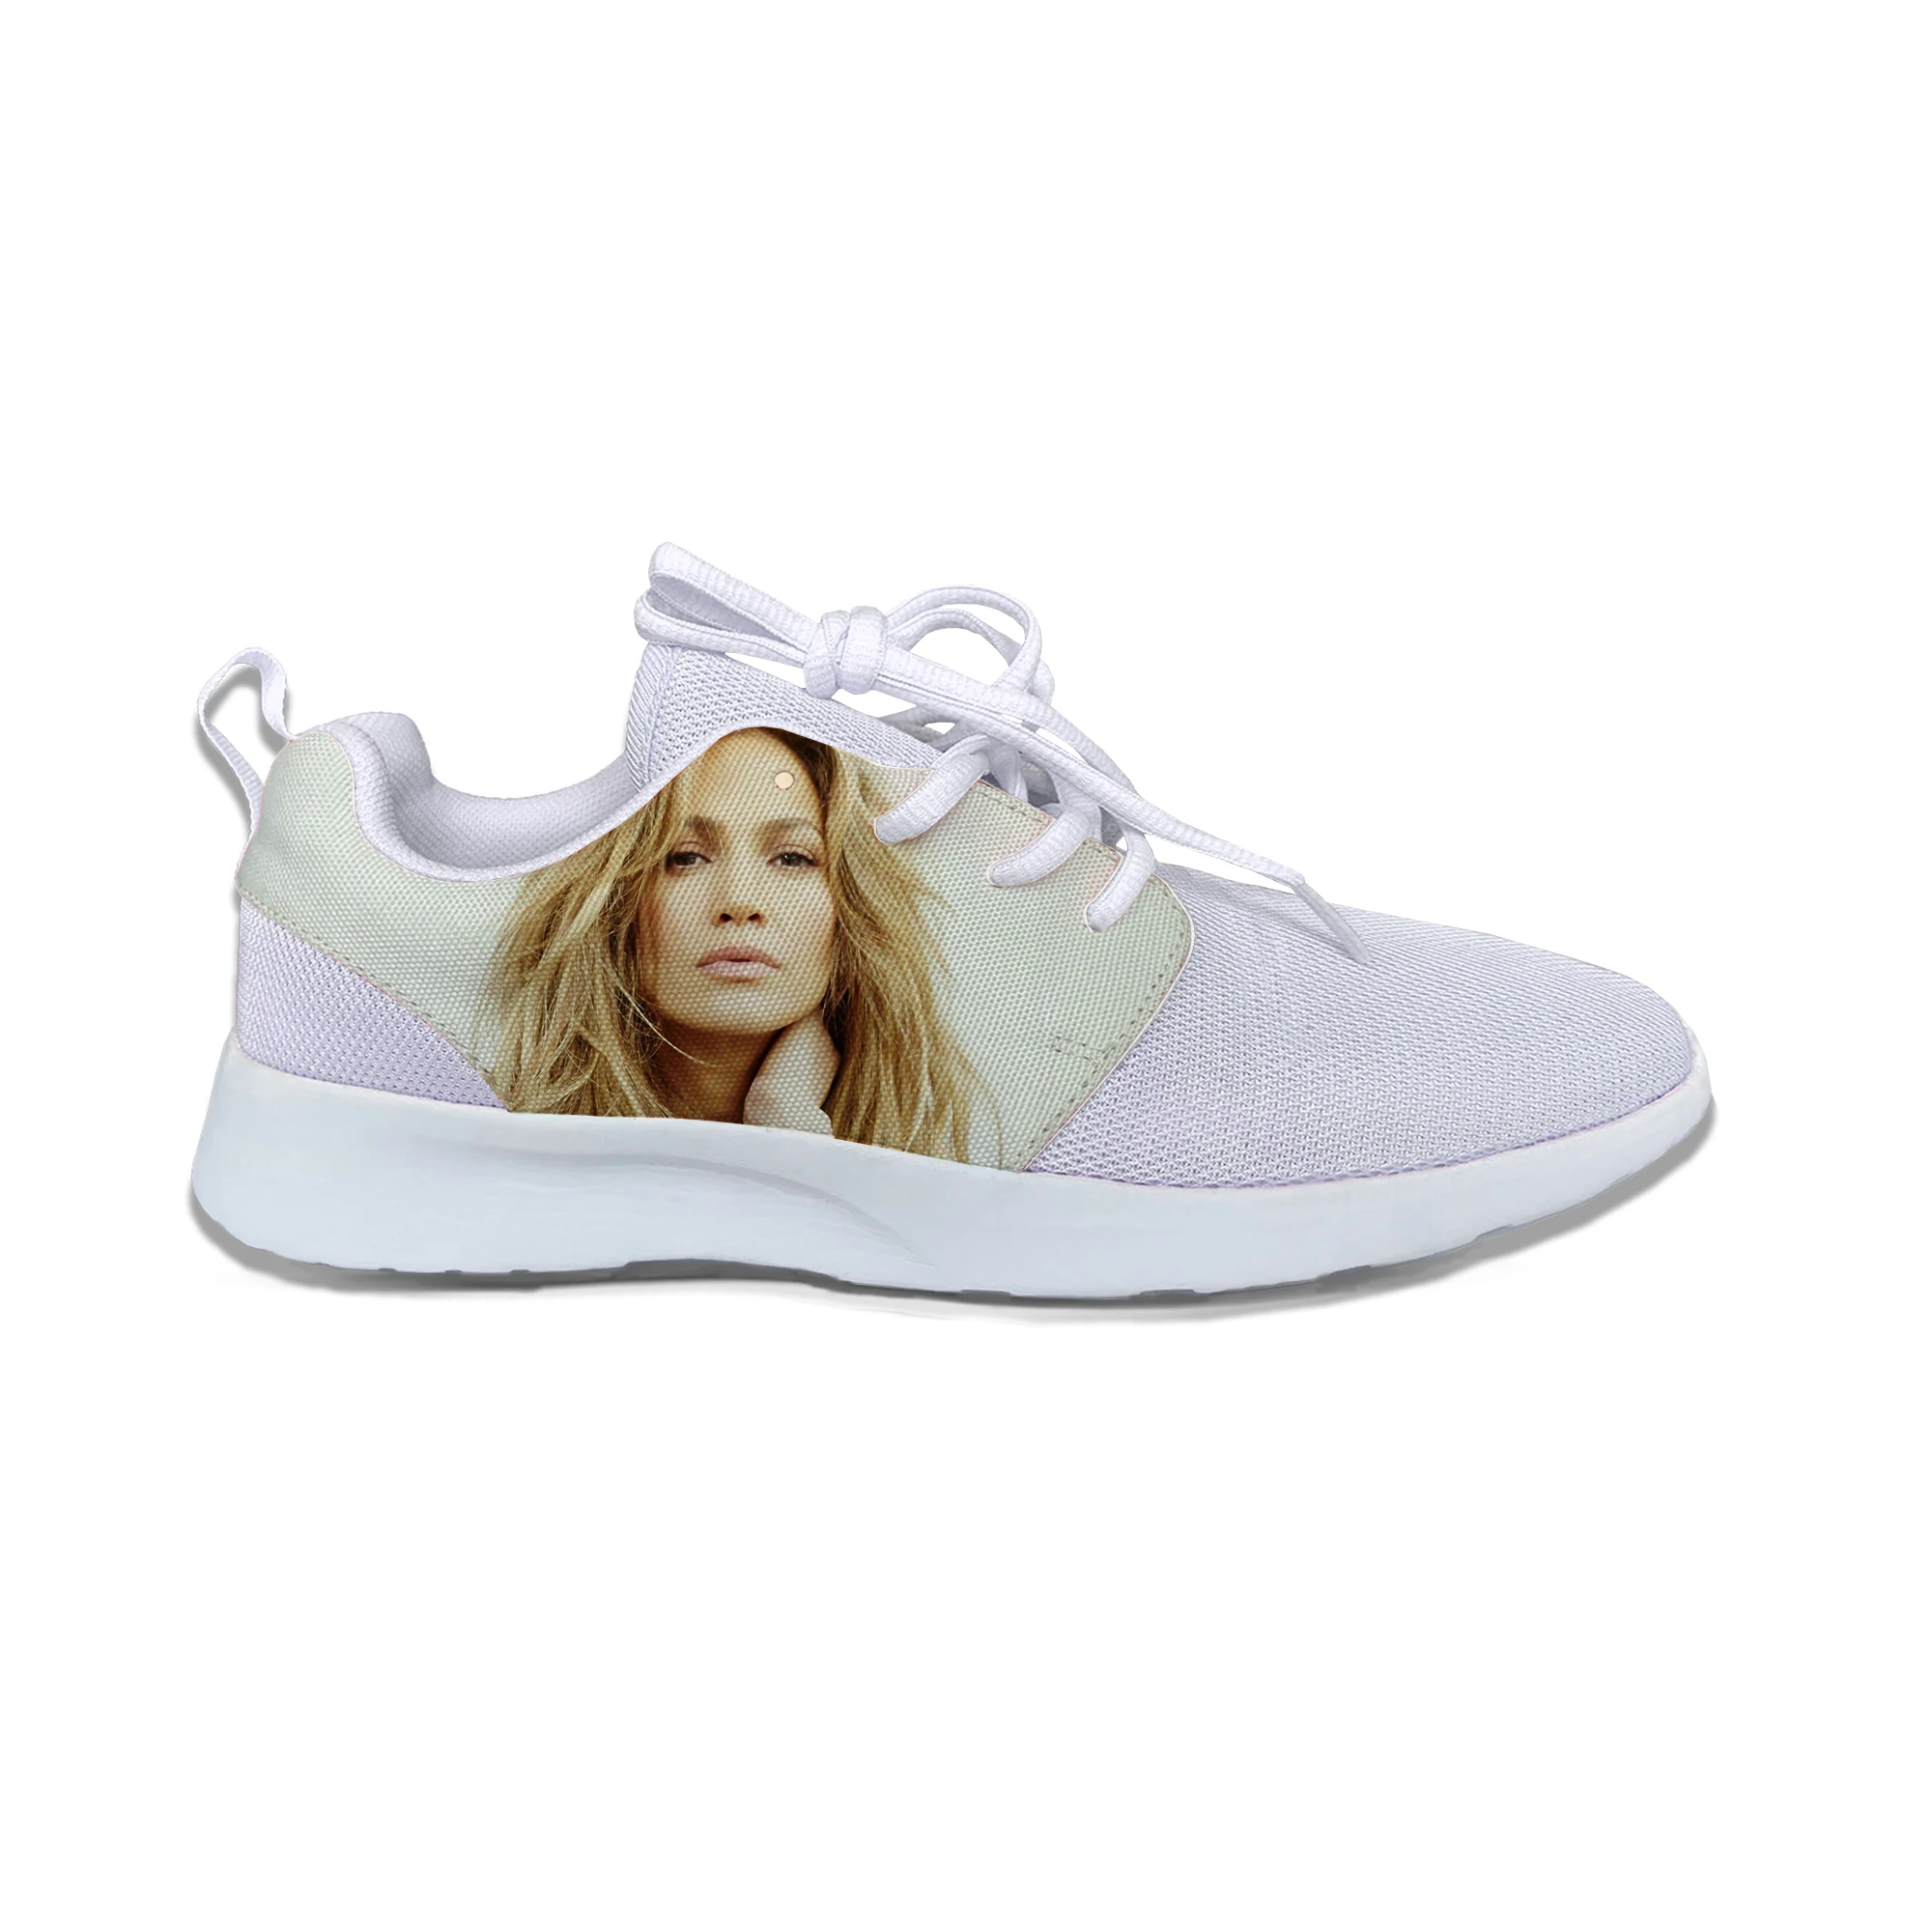 Hot Jennifer Lopez Cantando Dentro De Você Música De Me Dar A Vida Lazer Tênis Respirável Moda Malha Clássicos Sapatos De Desporto